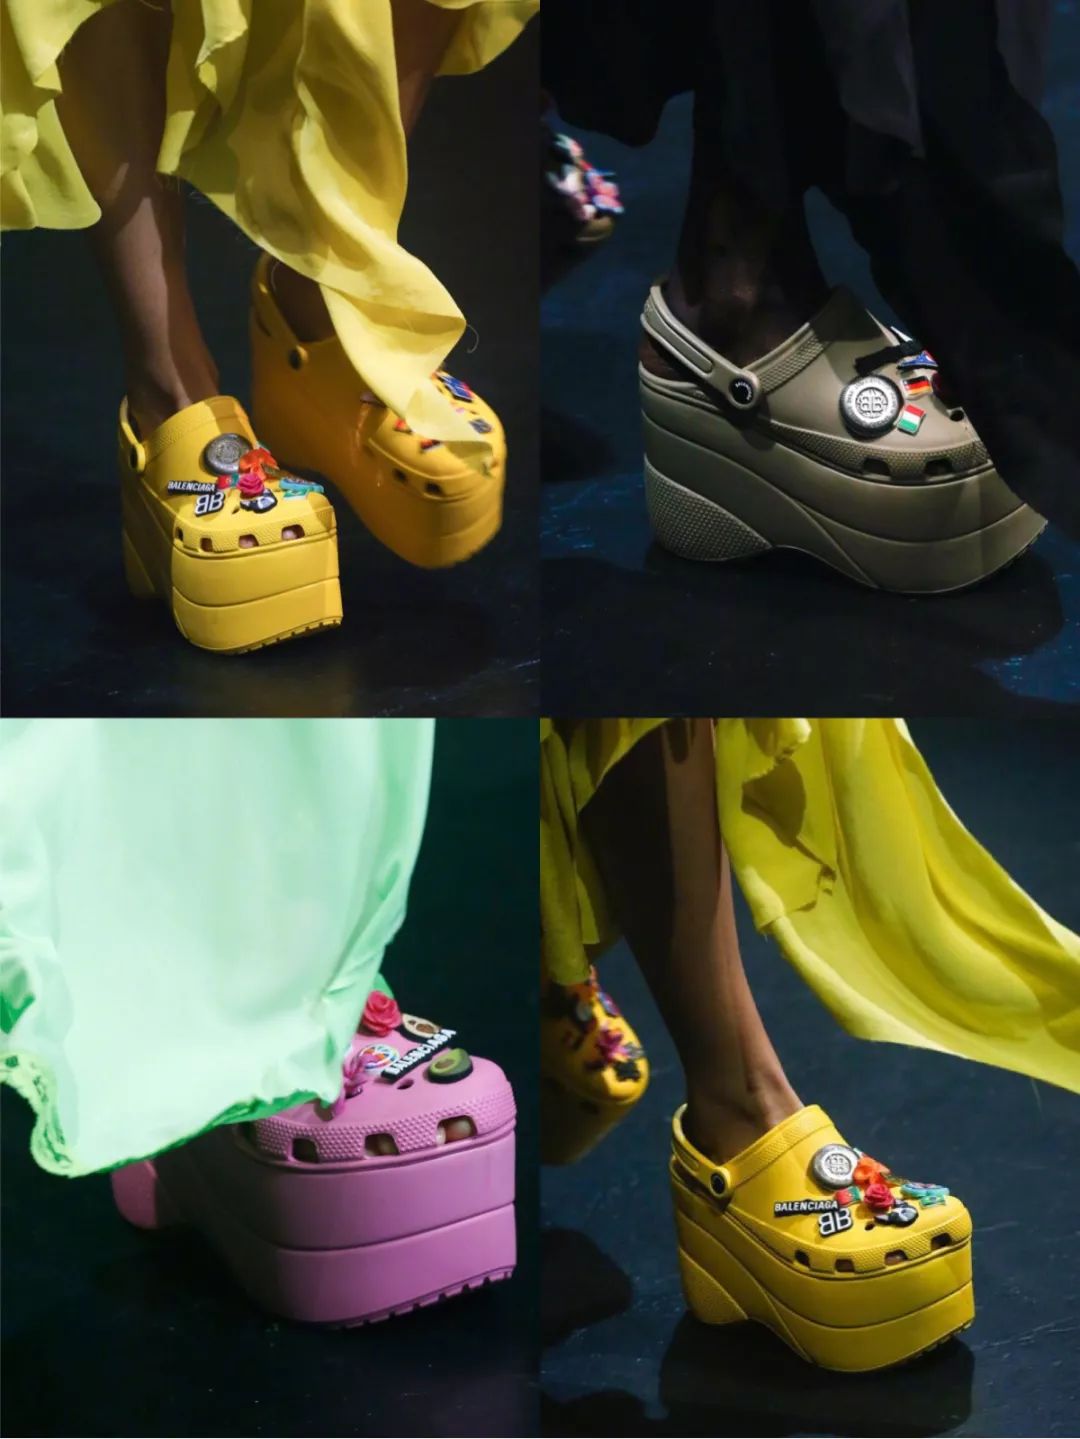 还有,巴黎世家与crocs合作的松糕洞洞鞋,简直是在挑战人类审丑的极限